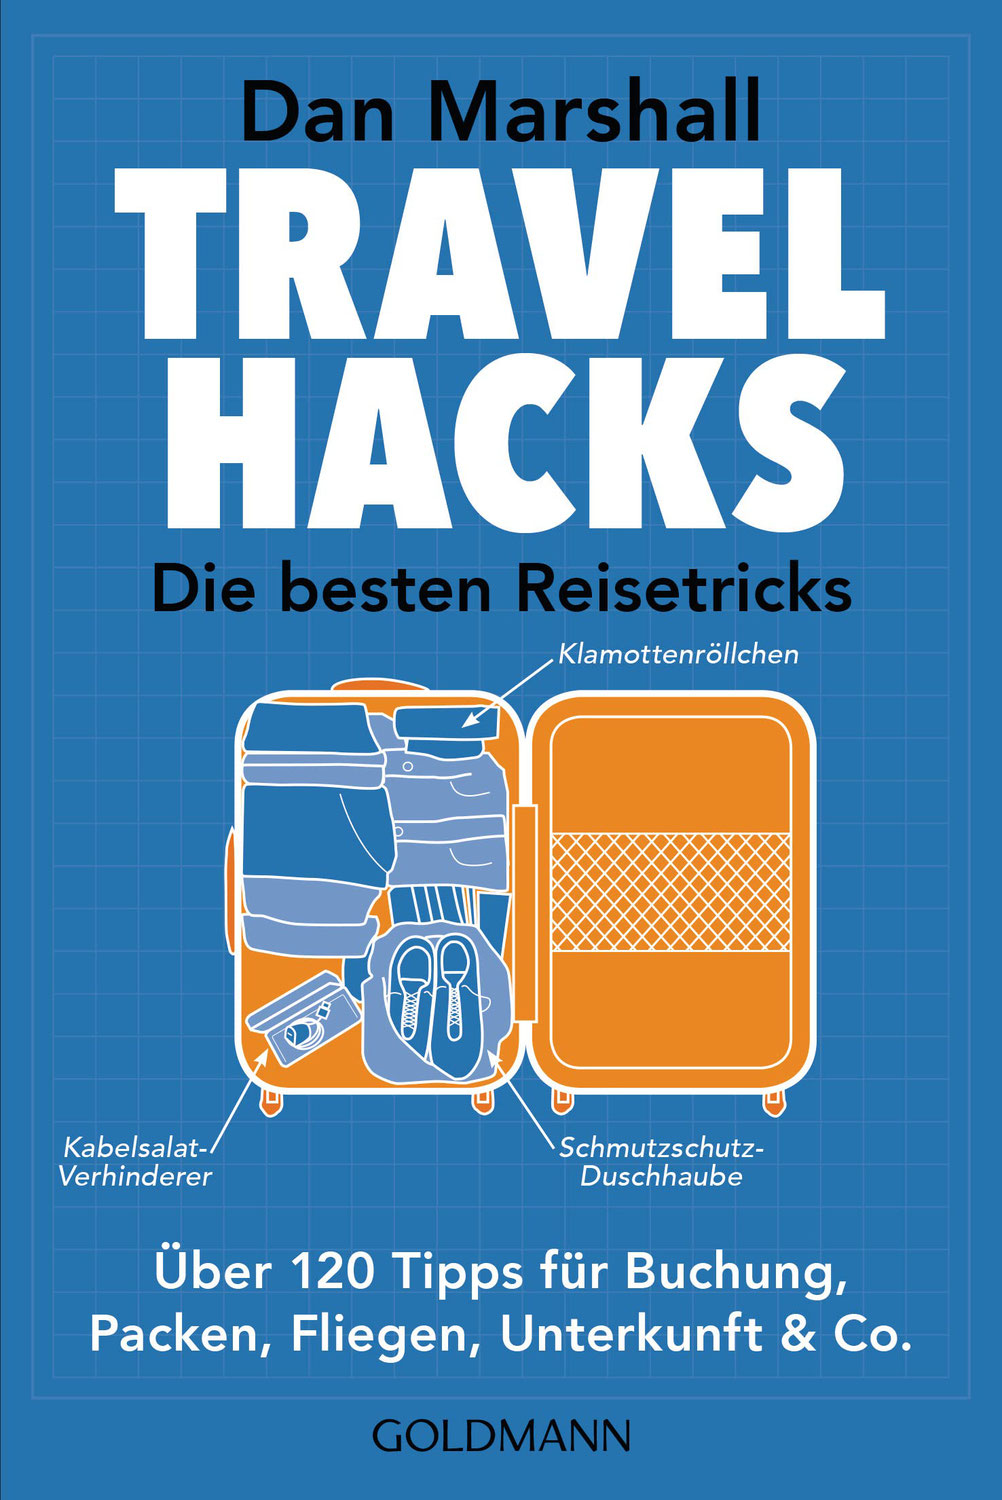 Travel Hacks - Die besten Reisetricks von Dan Marshall ☆☆☆☆